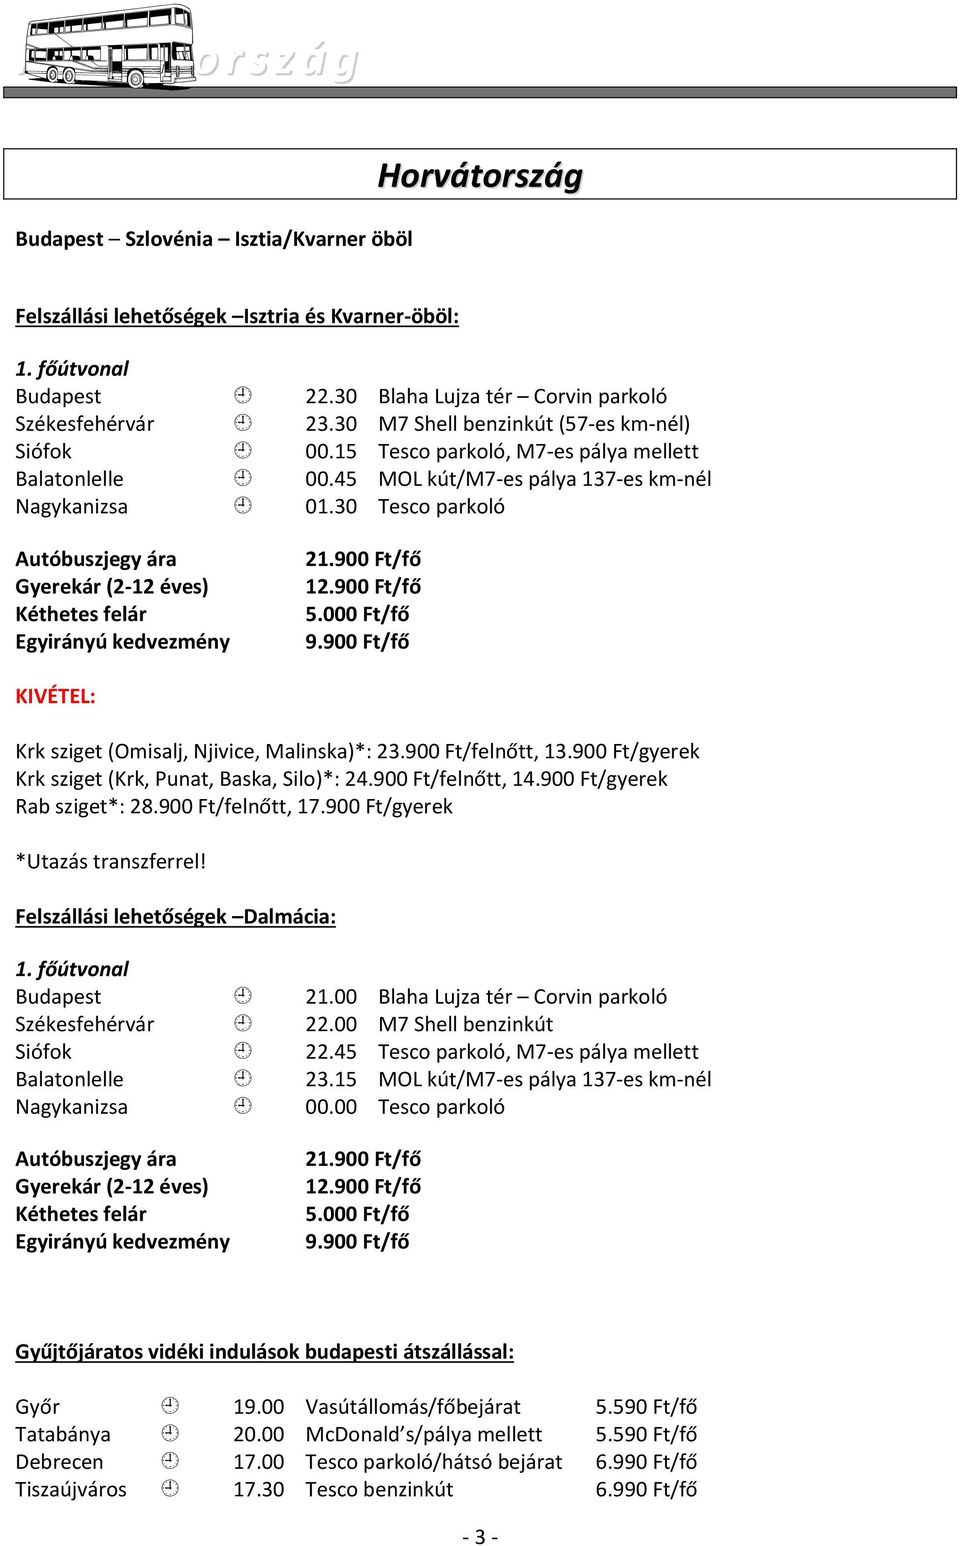 45 MOL kút/m7-es pálya 137-es km-nél Nagykanizsa 01.30 Tesco parkoló Autóbuszjegy ára Gyerekár (2-12 éves) Egyirányú kedvezmény 21.900 Ft/fő 12.900 Ft/fő 9.